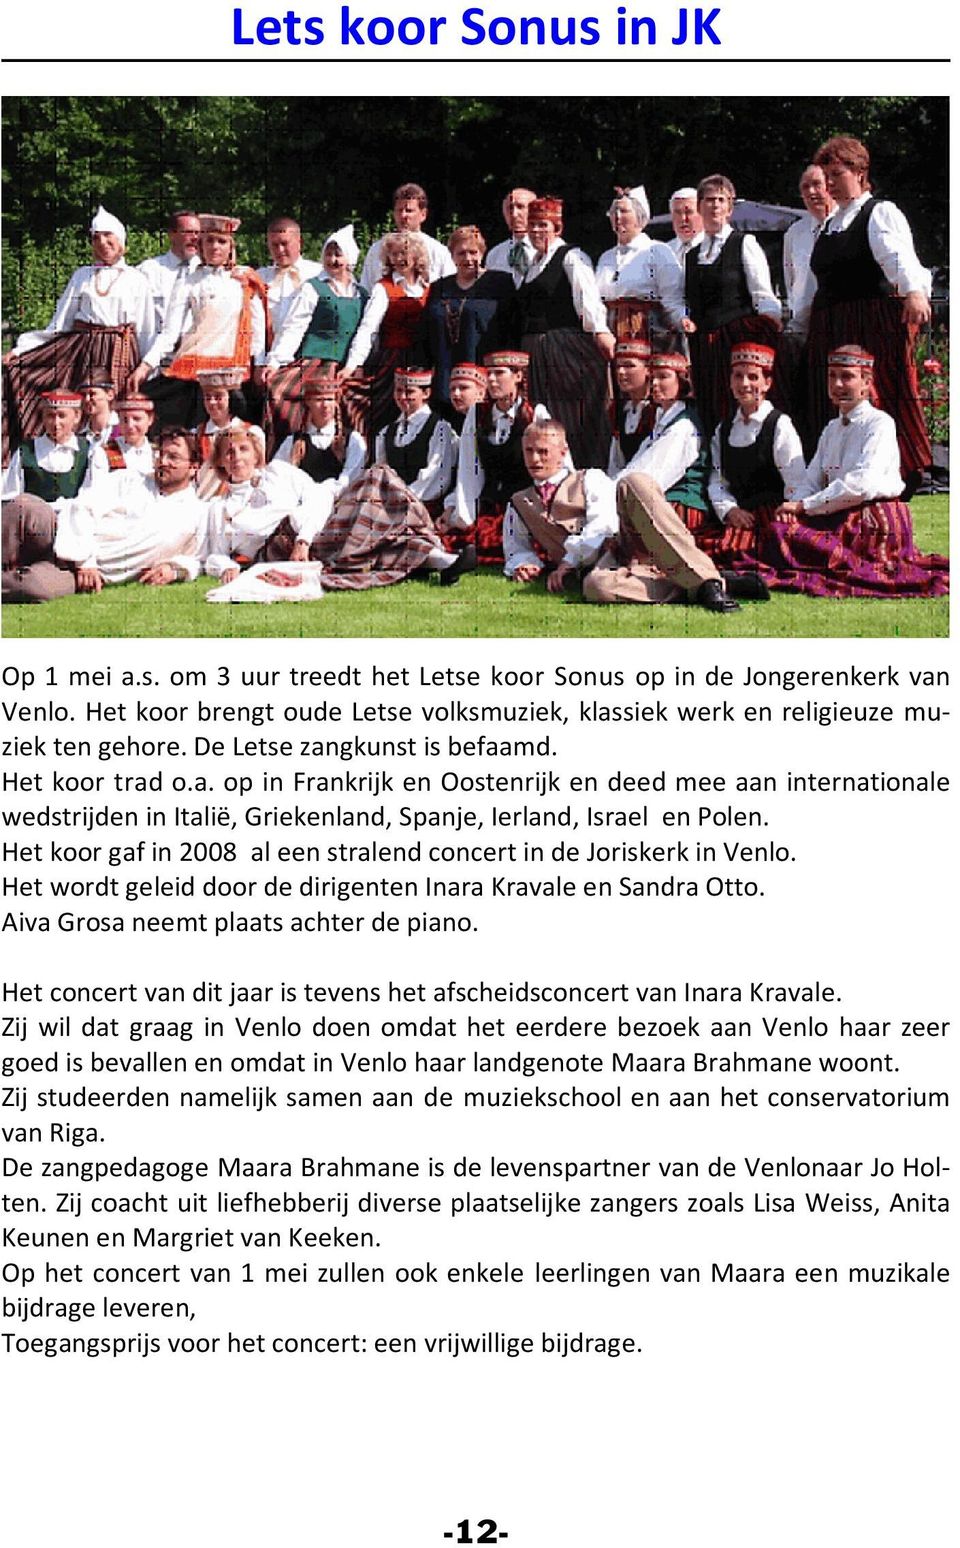 Het koor gaf in 2008 al een stralend concert in de Joriskerk in Venlo. Het wordt geleid door de dirigenten Inara Kravale en Sandra Otto. Aiva Grosa neemt plaats achter de piano.